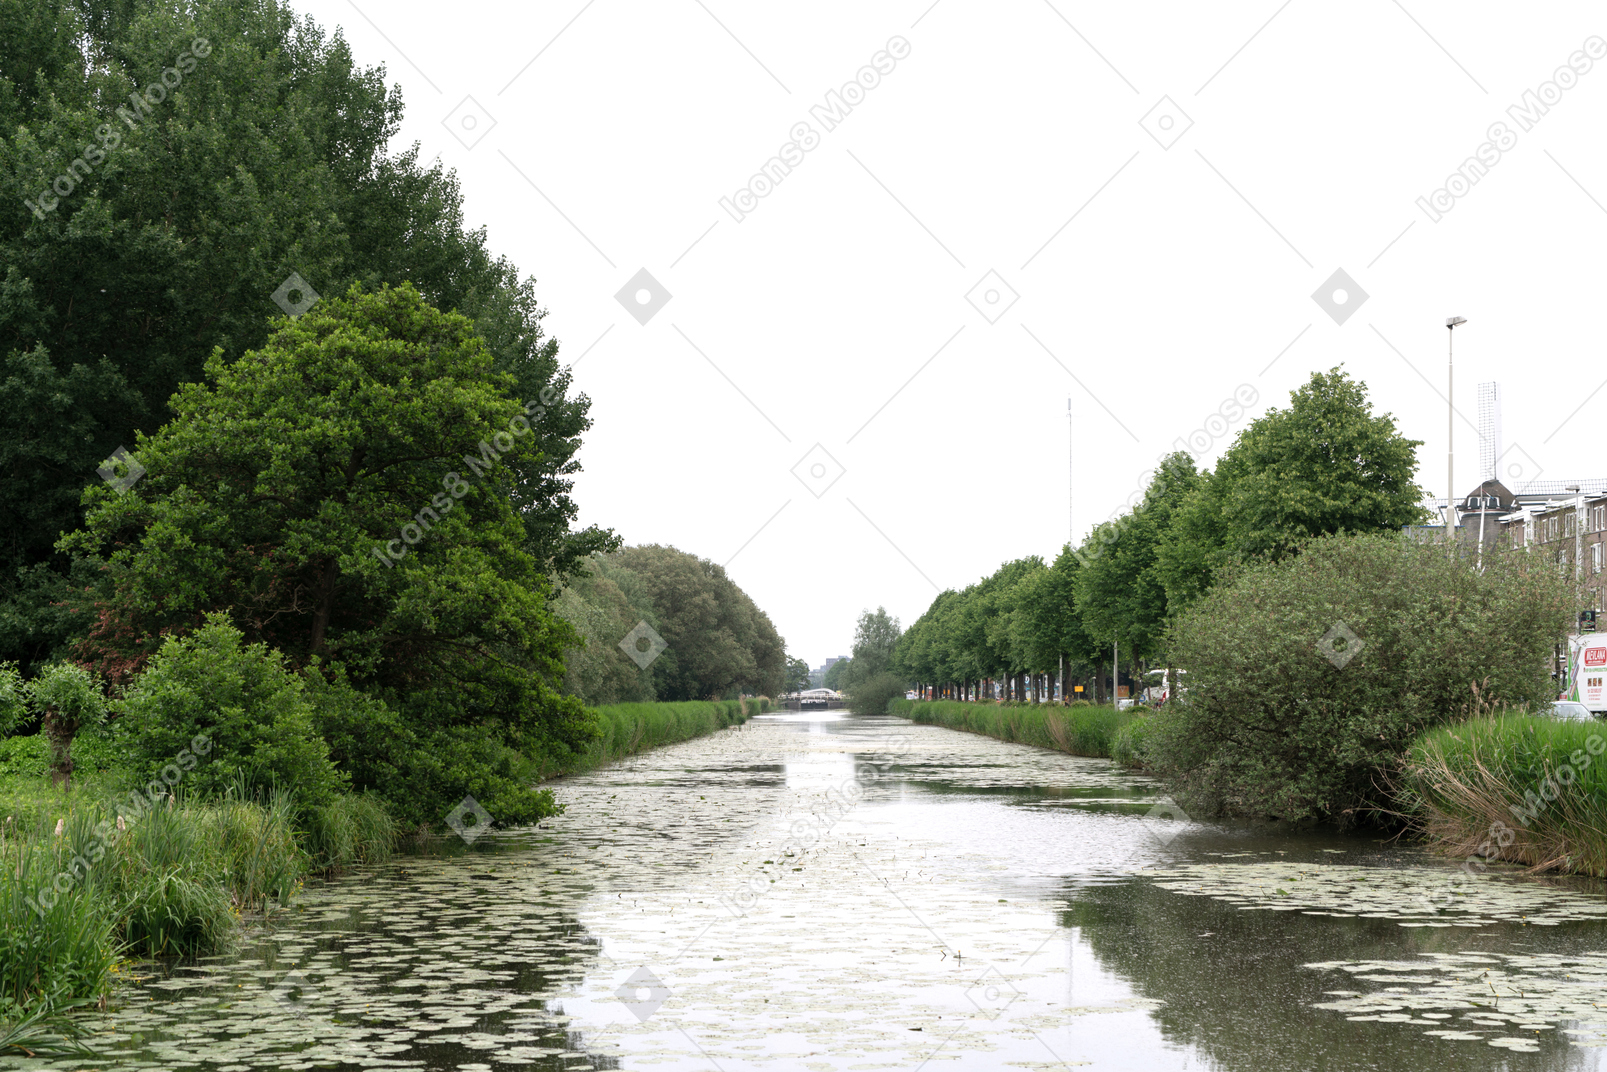 Una vista di un fiume con alberi su entrambi i lati